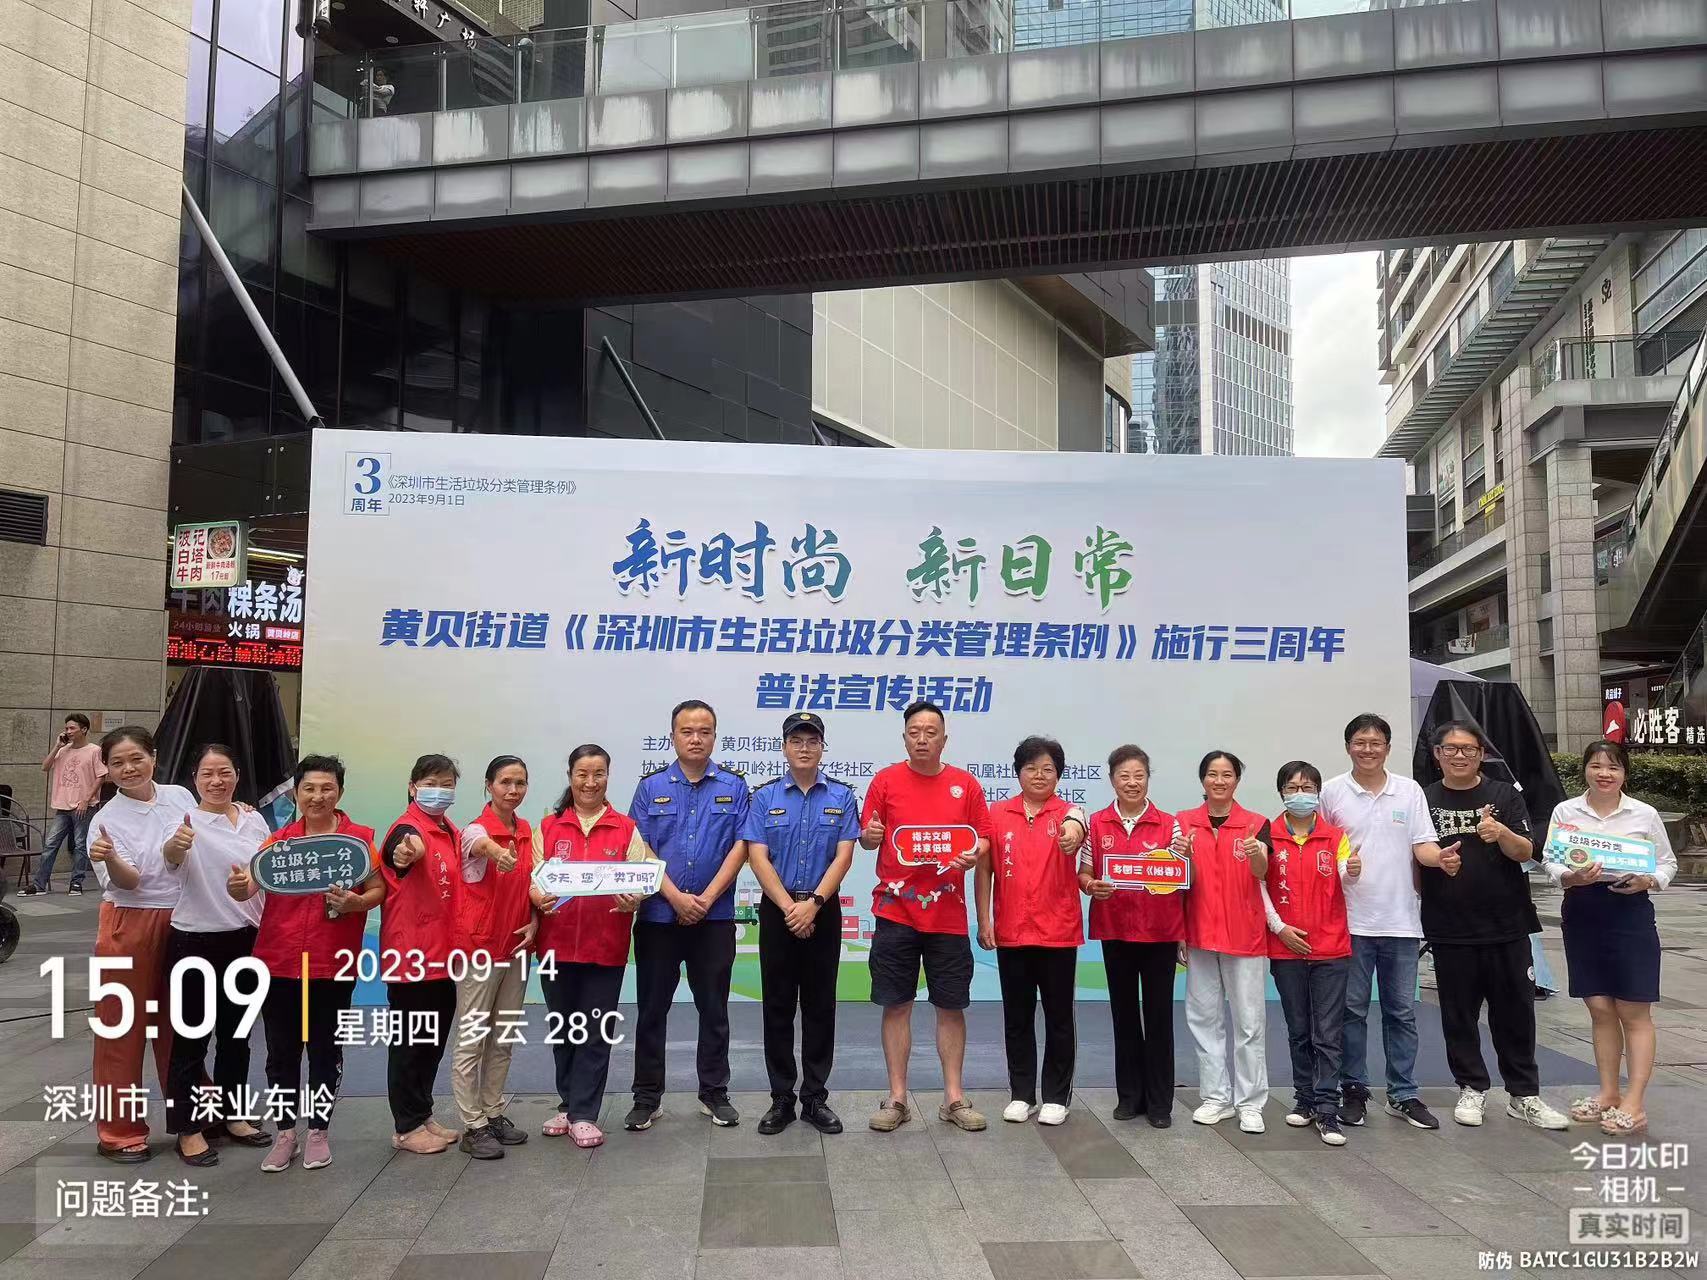 黄贝街道开展《深圳市生活垃圾分类管理条例》施行三周年普法宣传活动